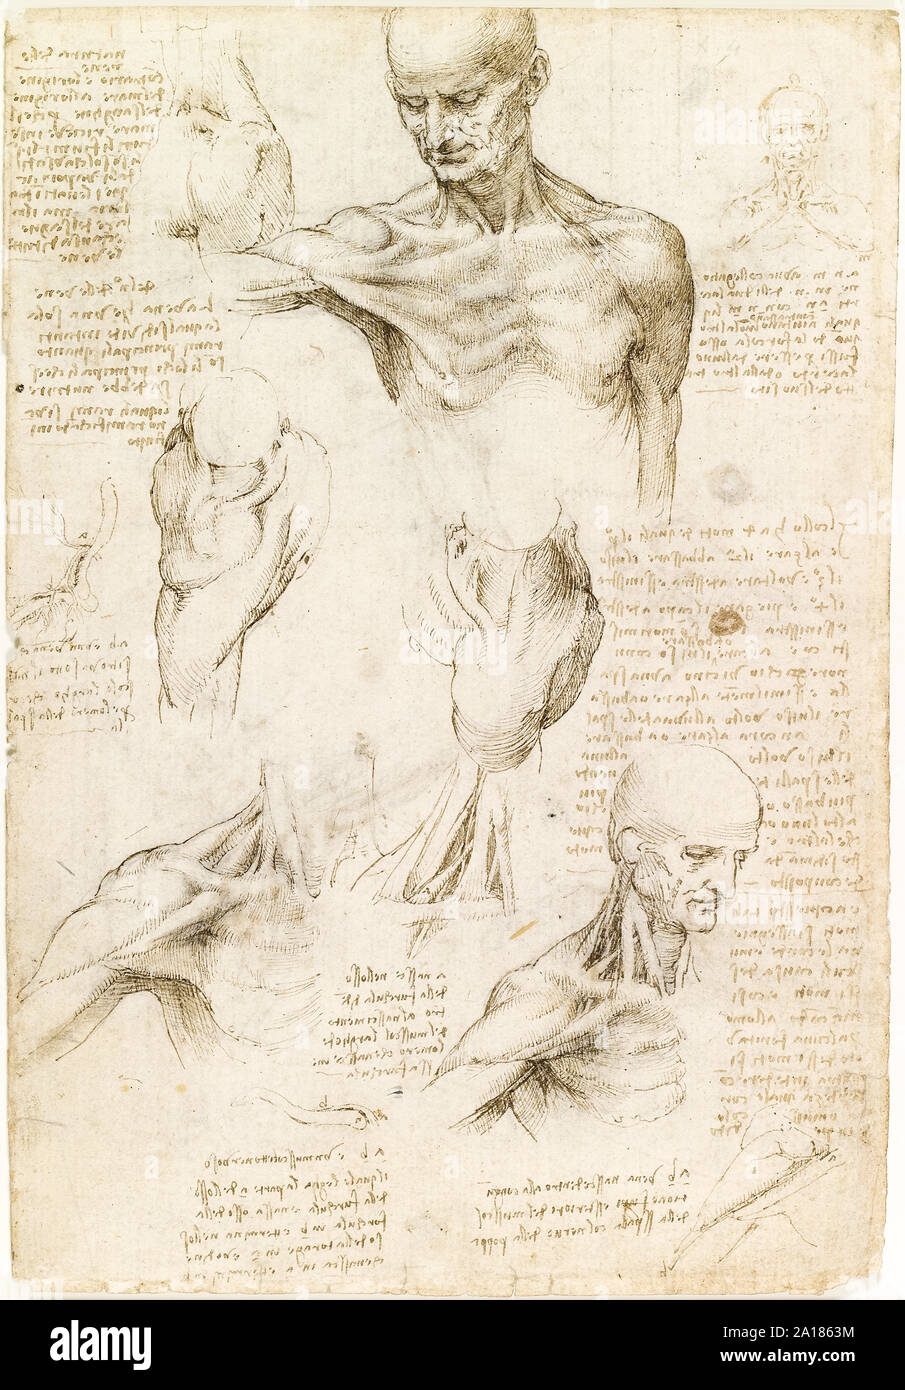 Anatomia superficiale della spalla e del collo da Leonardo da Vinci (1452-1519) realizzato tra il 1510-12 che mostra i muscoli della spalla umana. Foto Stock